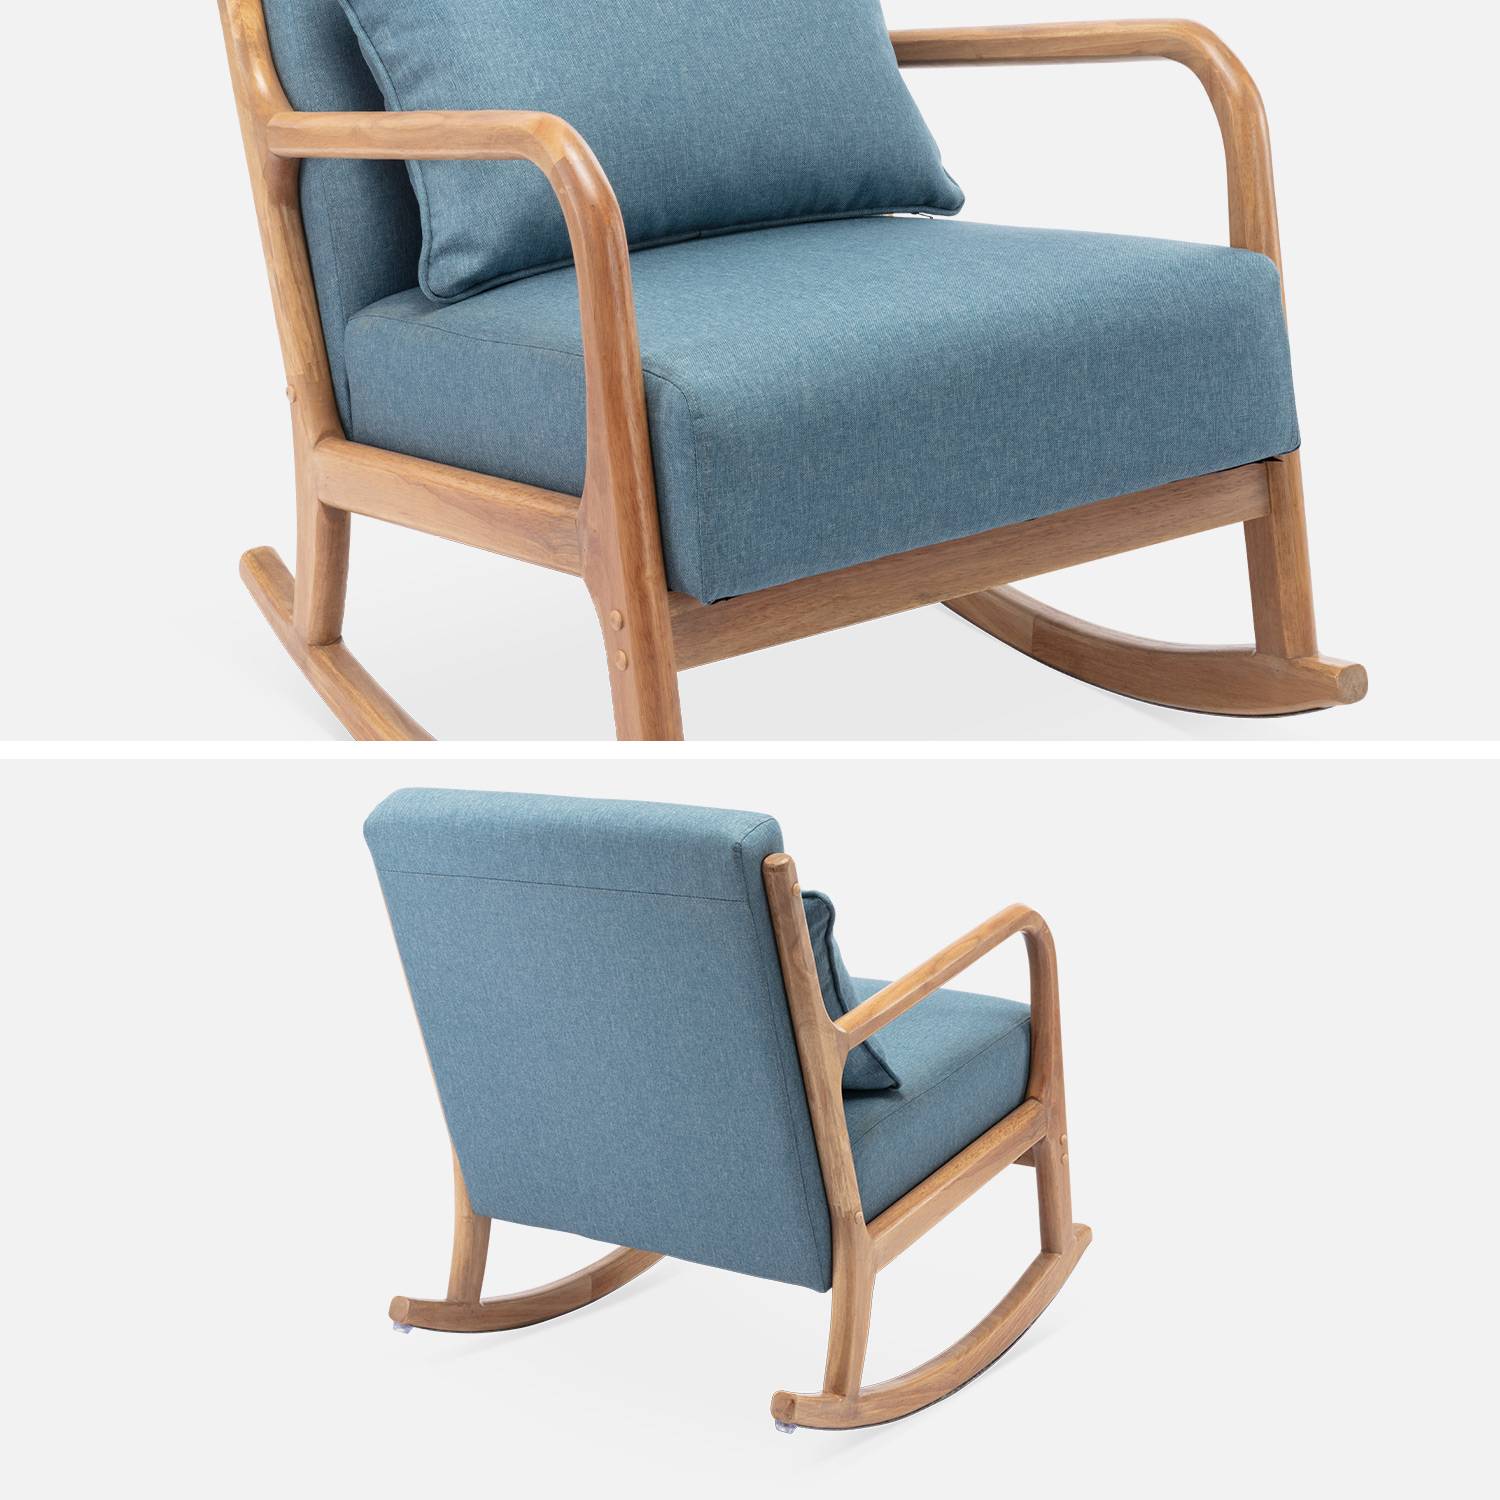 Fauteuil à bascule design en bois et tissu, 1 place, rocking chair scandinave, bleu Photo6